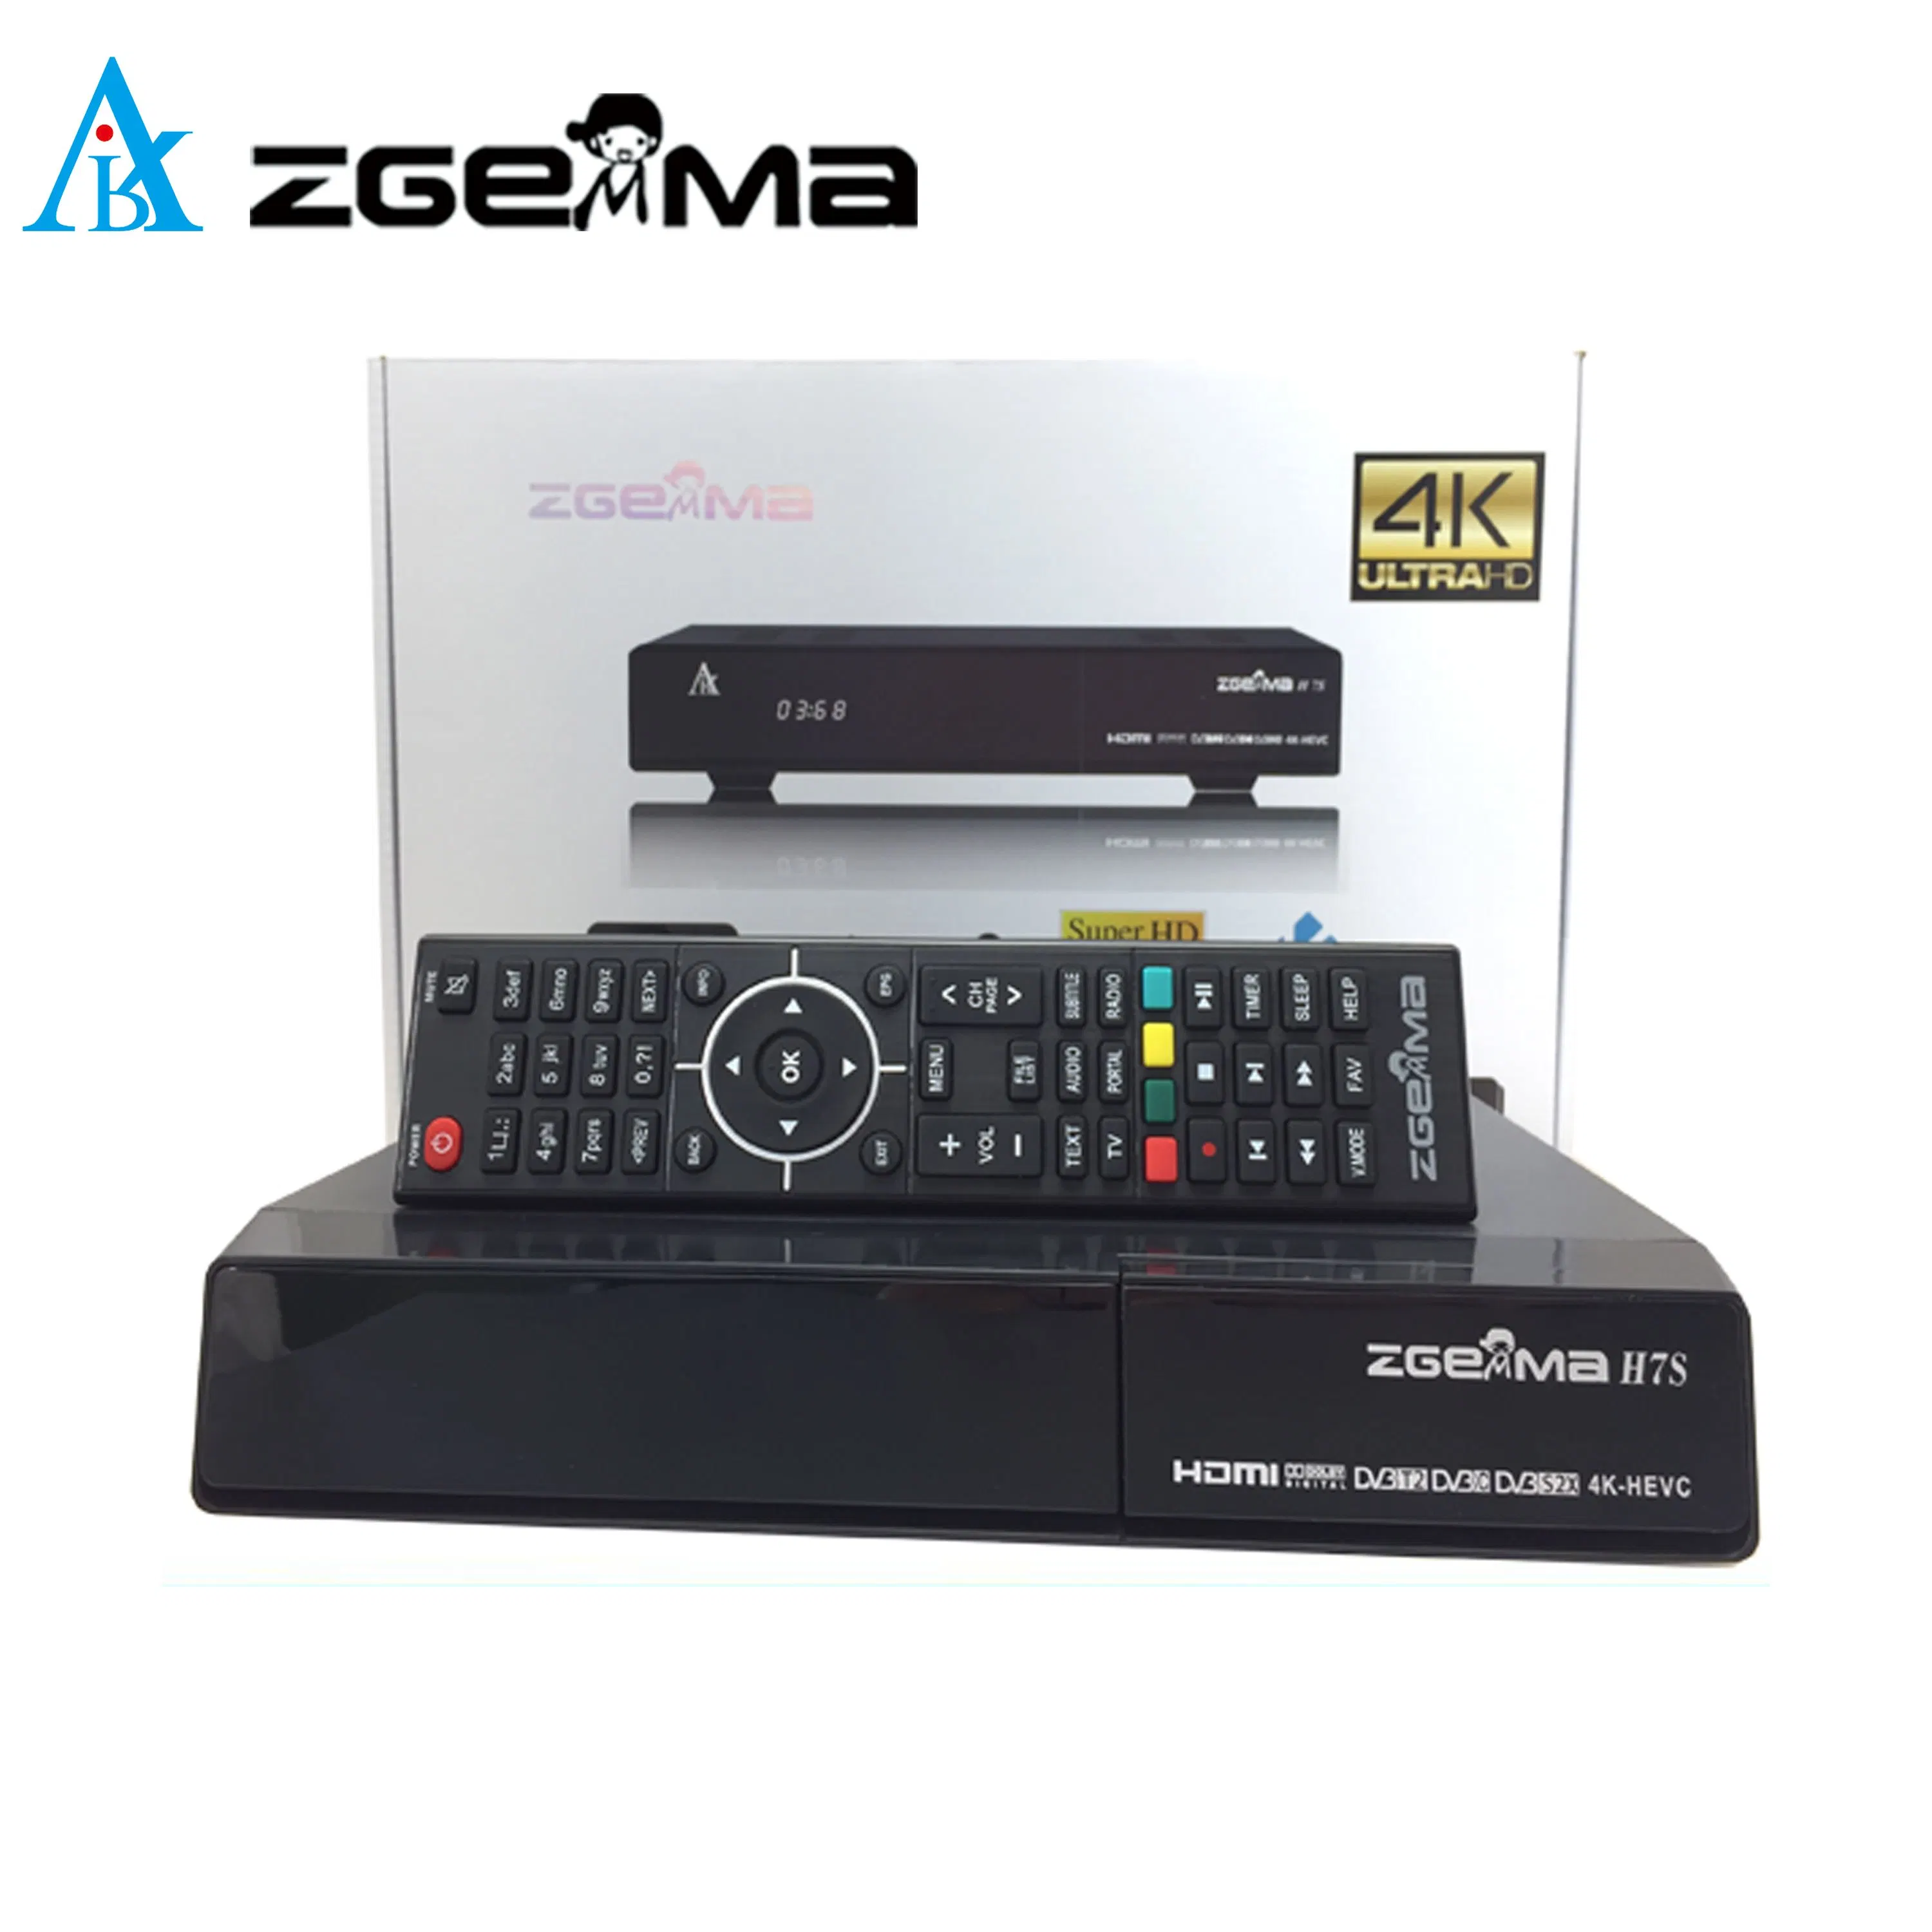 DVB-S2X + DVB-T2/C Combo Tuner مضمن IPTV و CI Ca مستقبل تلفزيون 4K مع قنوات فضائية Zgemma H7s